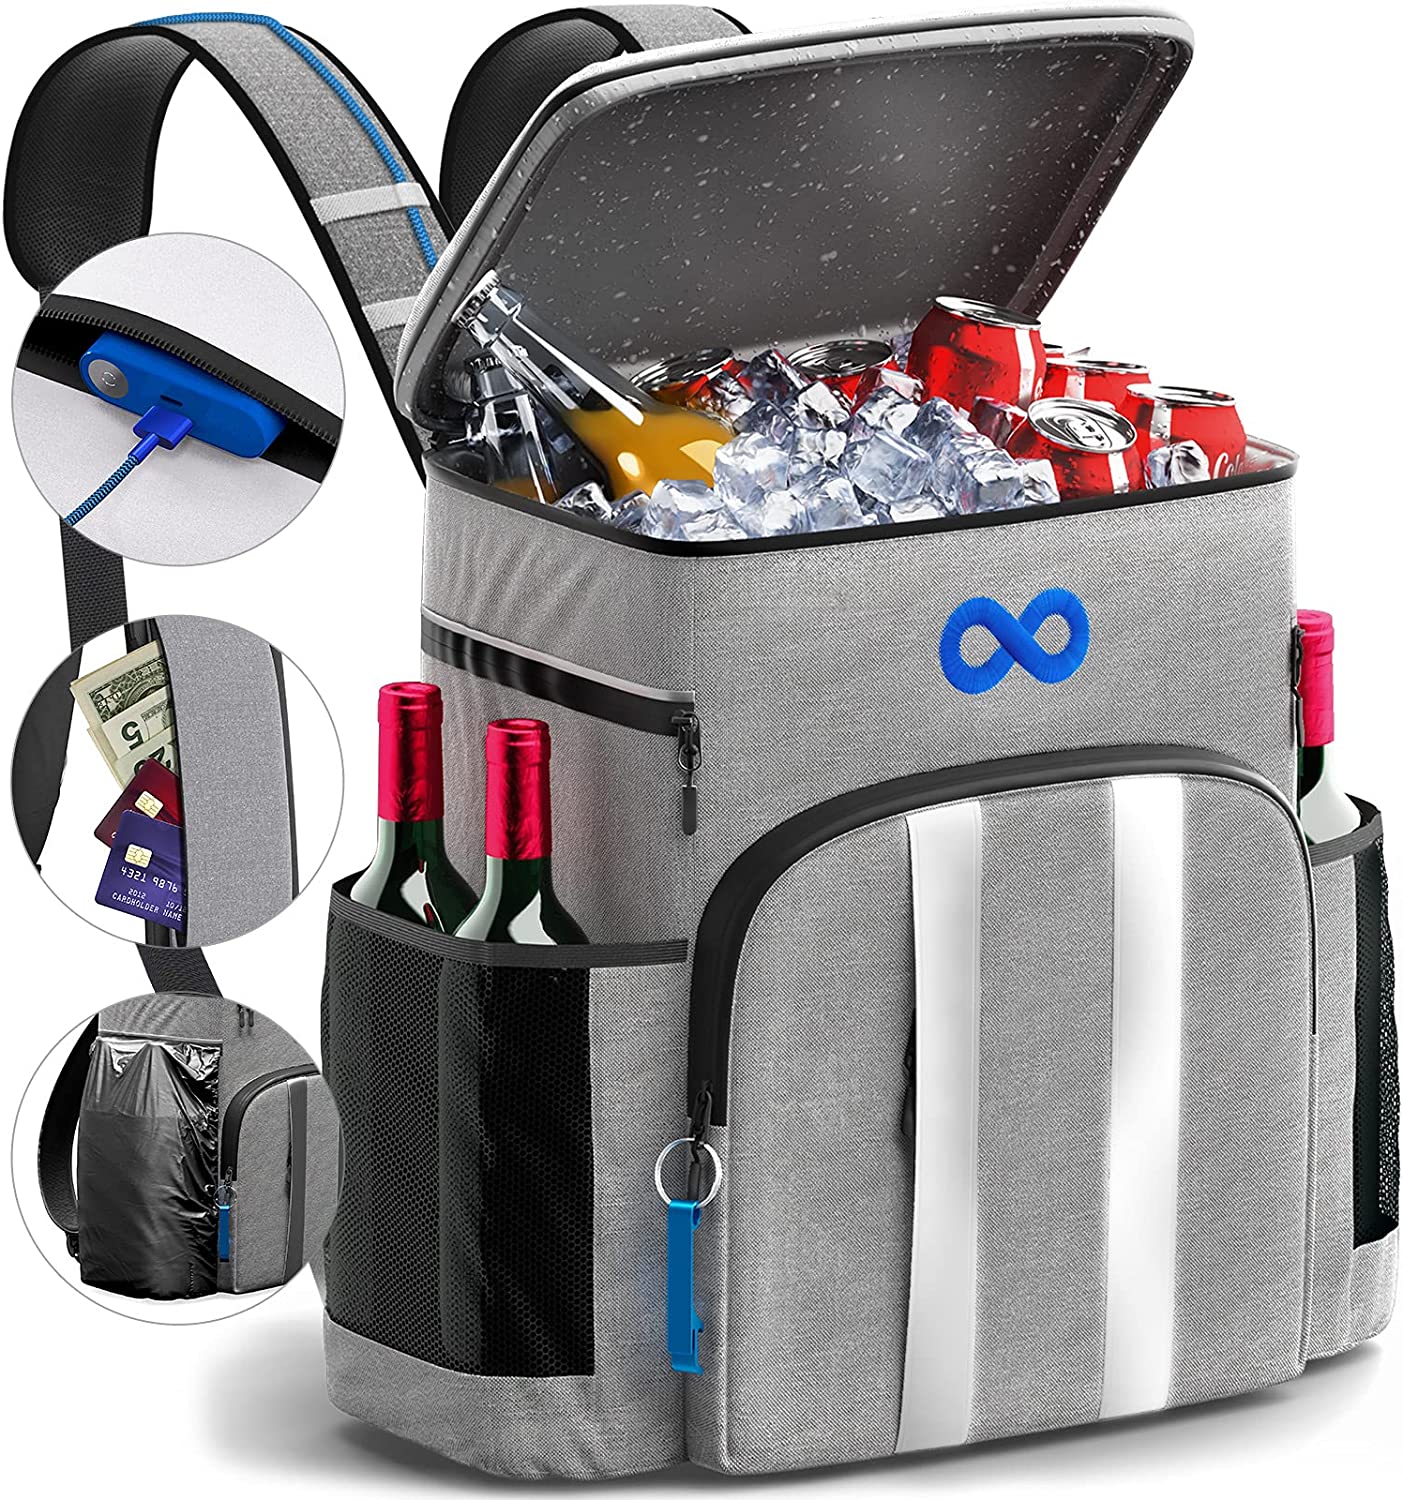 Everlasting Comfort Reflective Stripes Adjustable Backpack Cooler